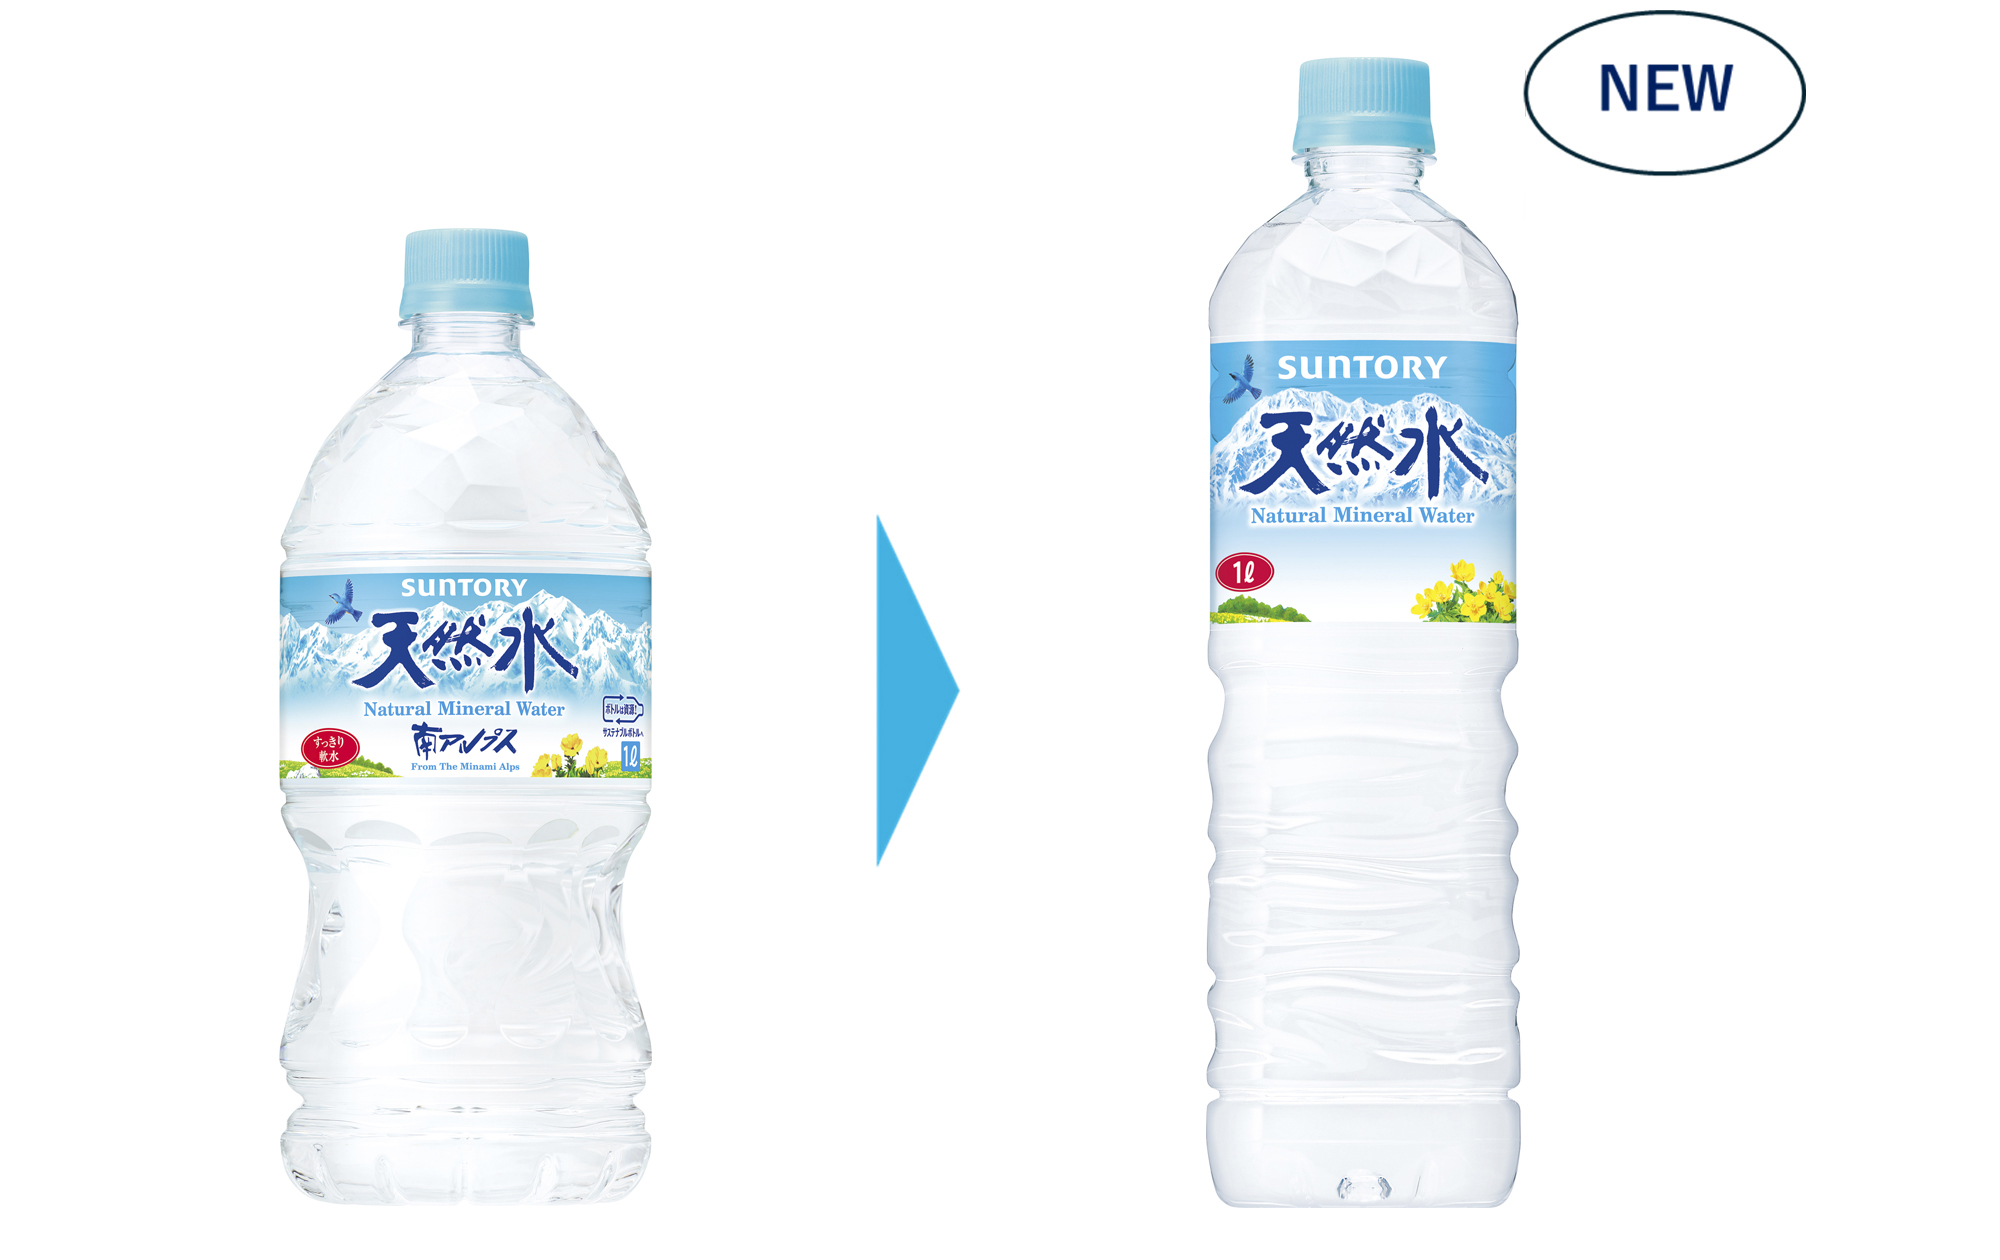 「サントリー天然水」1Lペットボトルの容器形状を刷新